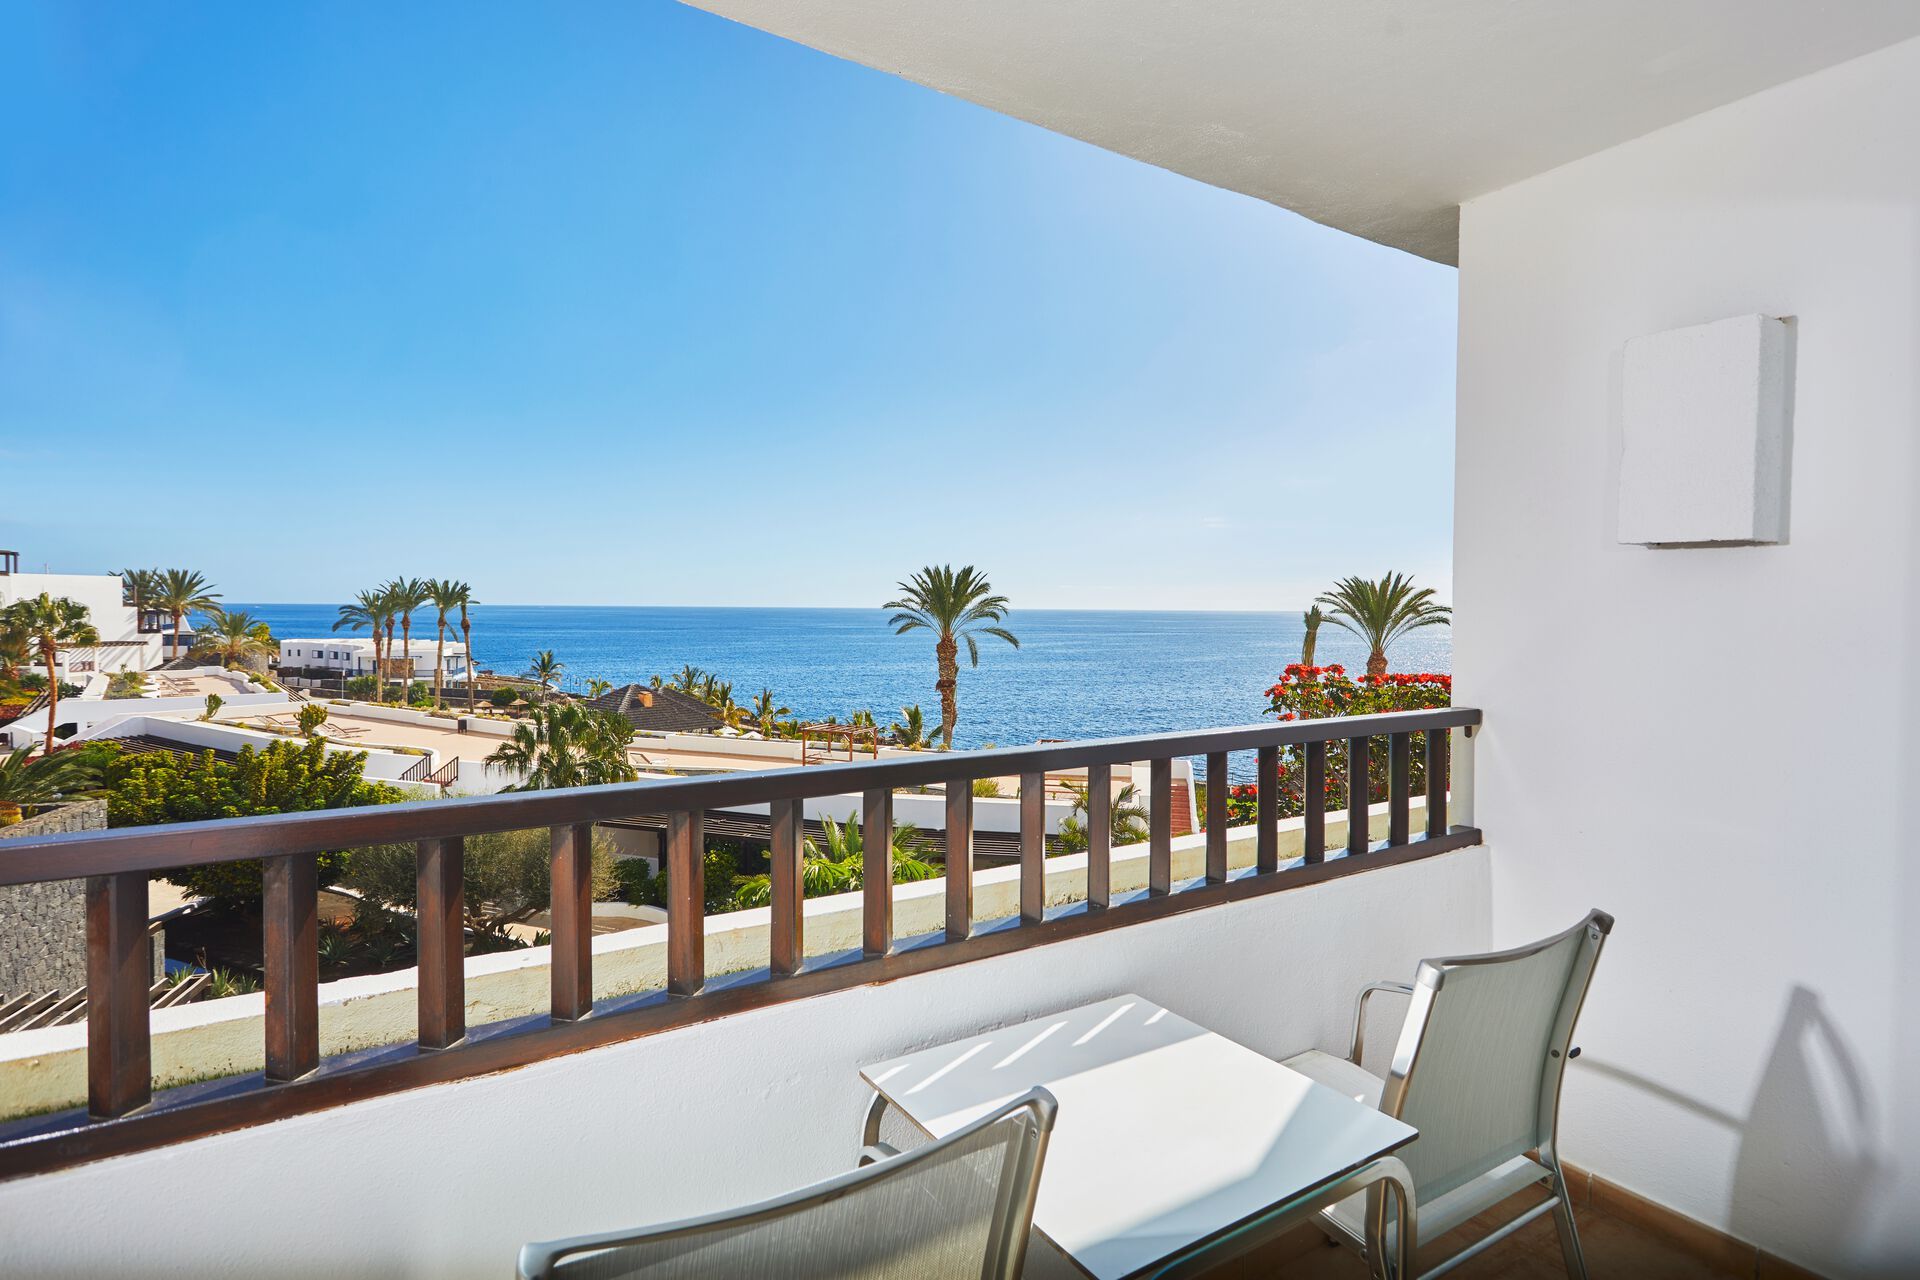 Canaries - Lanzarote - Espagne - Hôtel Secrets Lanzarote Resort & Spa 5*